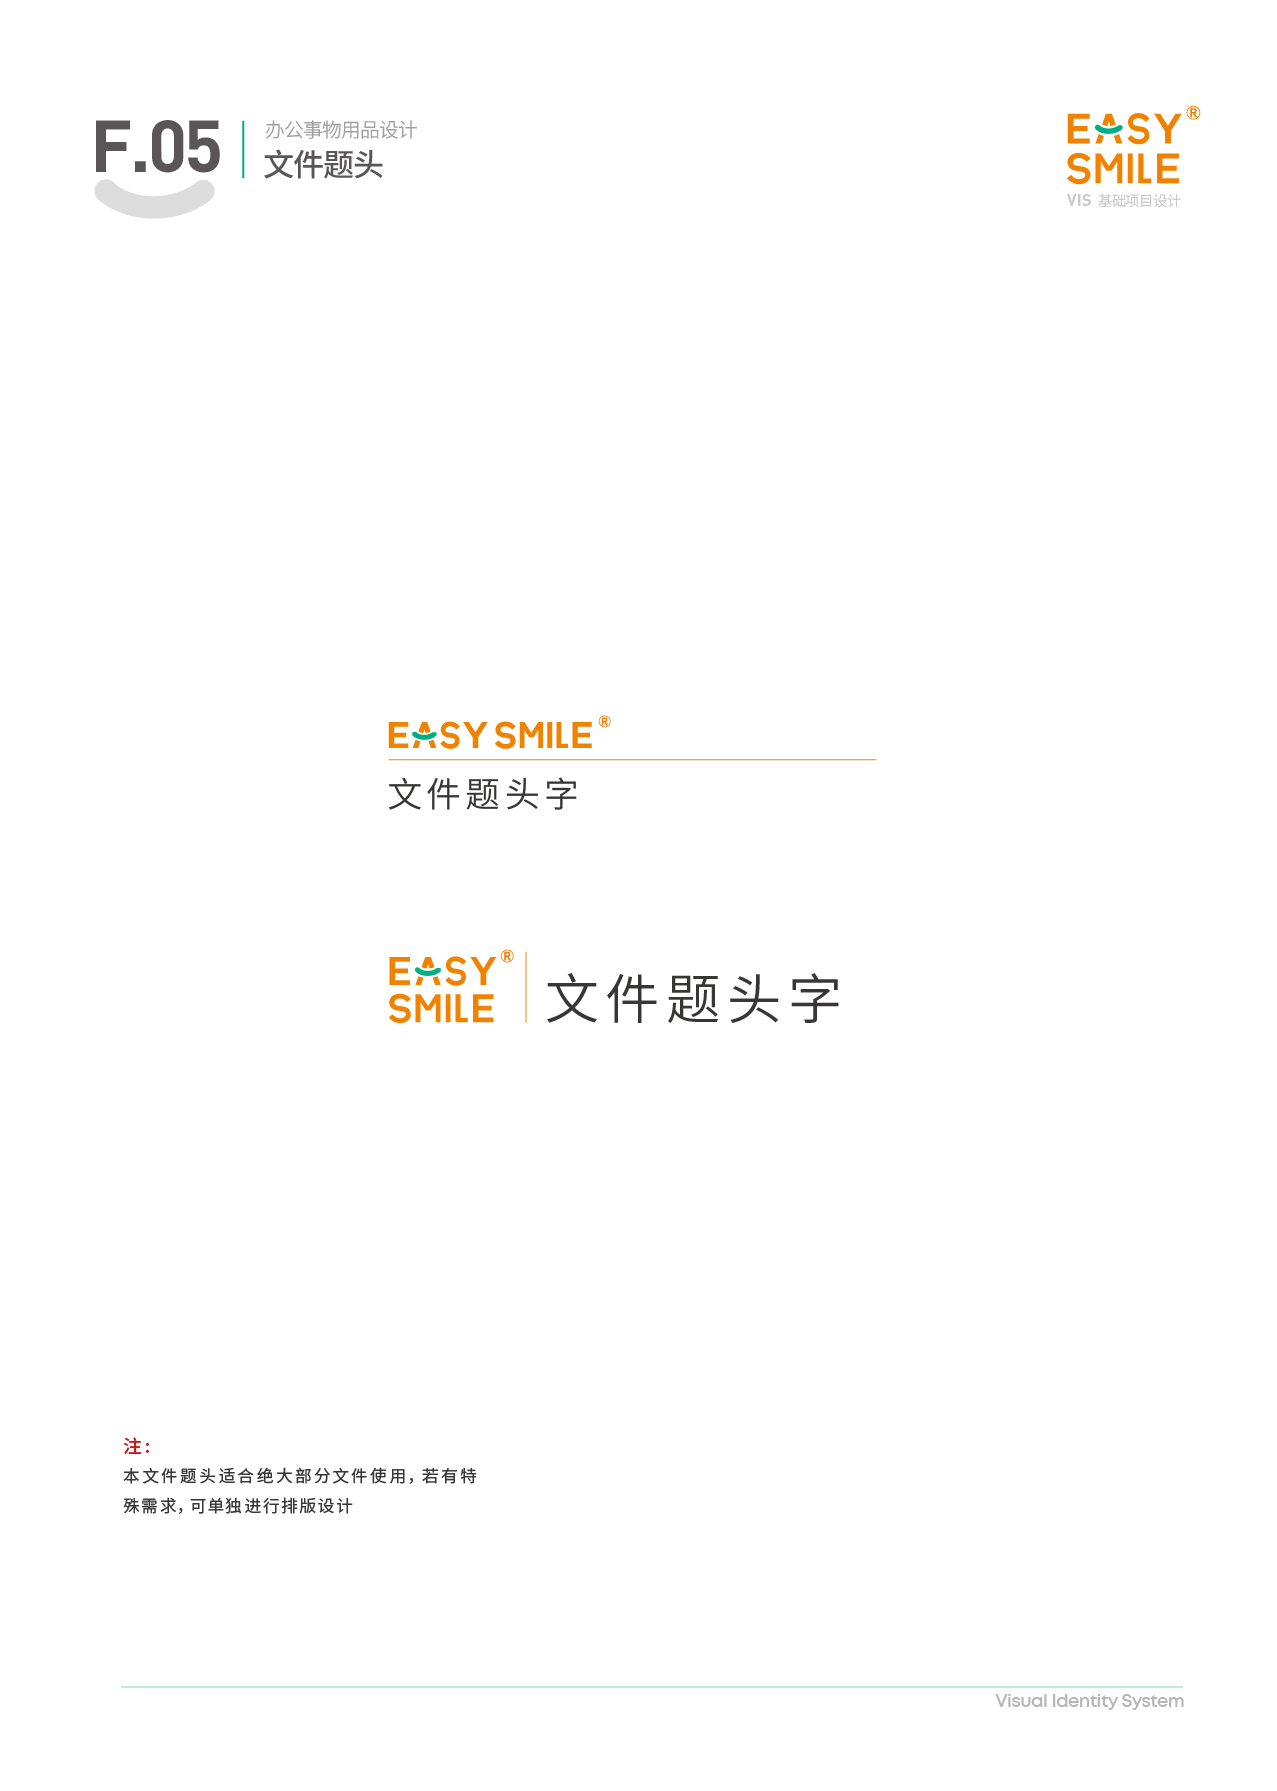 Easysmile 轻松笑品牌VIS图38